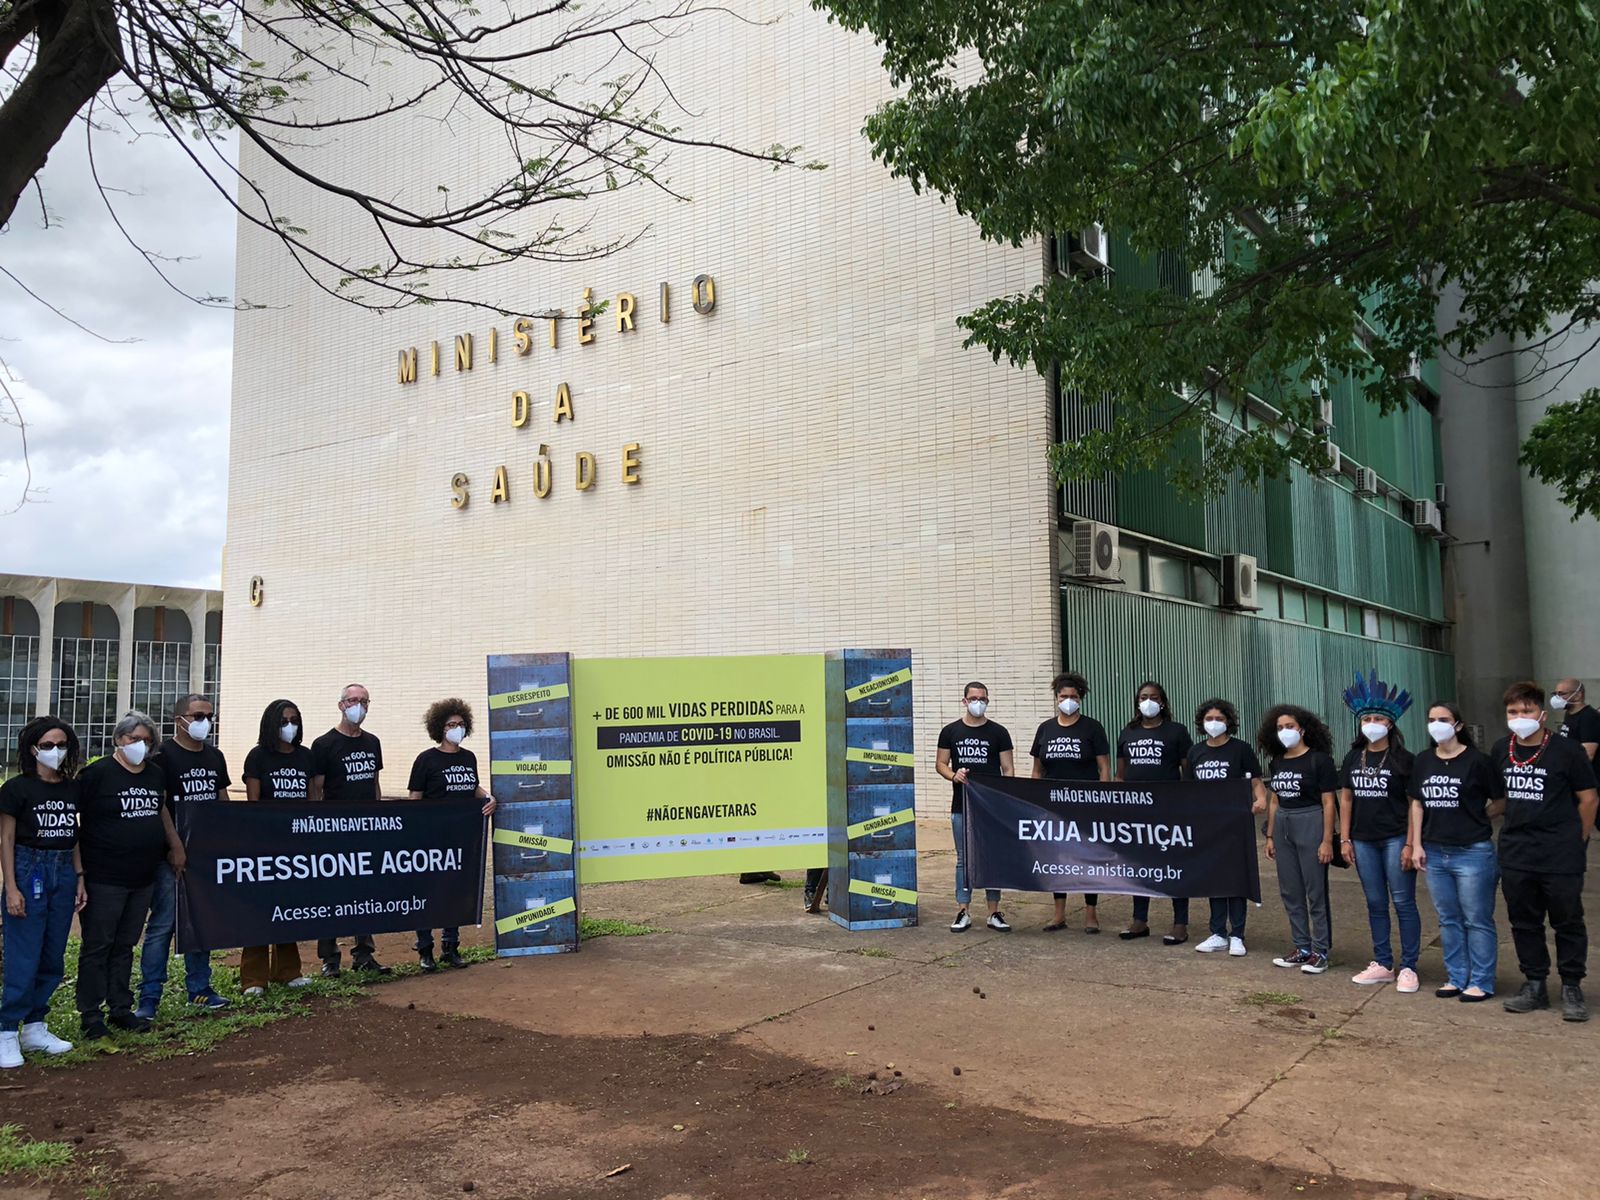 Fotografia mostra pessoas protestando em frente ao Ministério da Saúde com cartazes que cobram responsabilização do governo brasileiro pela má gestão da pandemia de Covid-19/ Foto: Anistia Internacional Brasil  